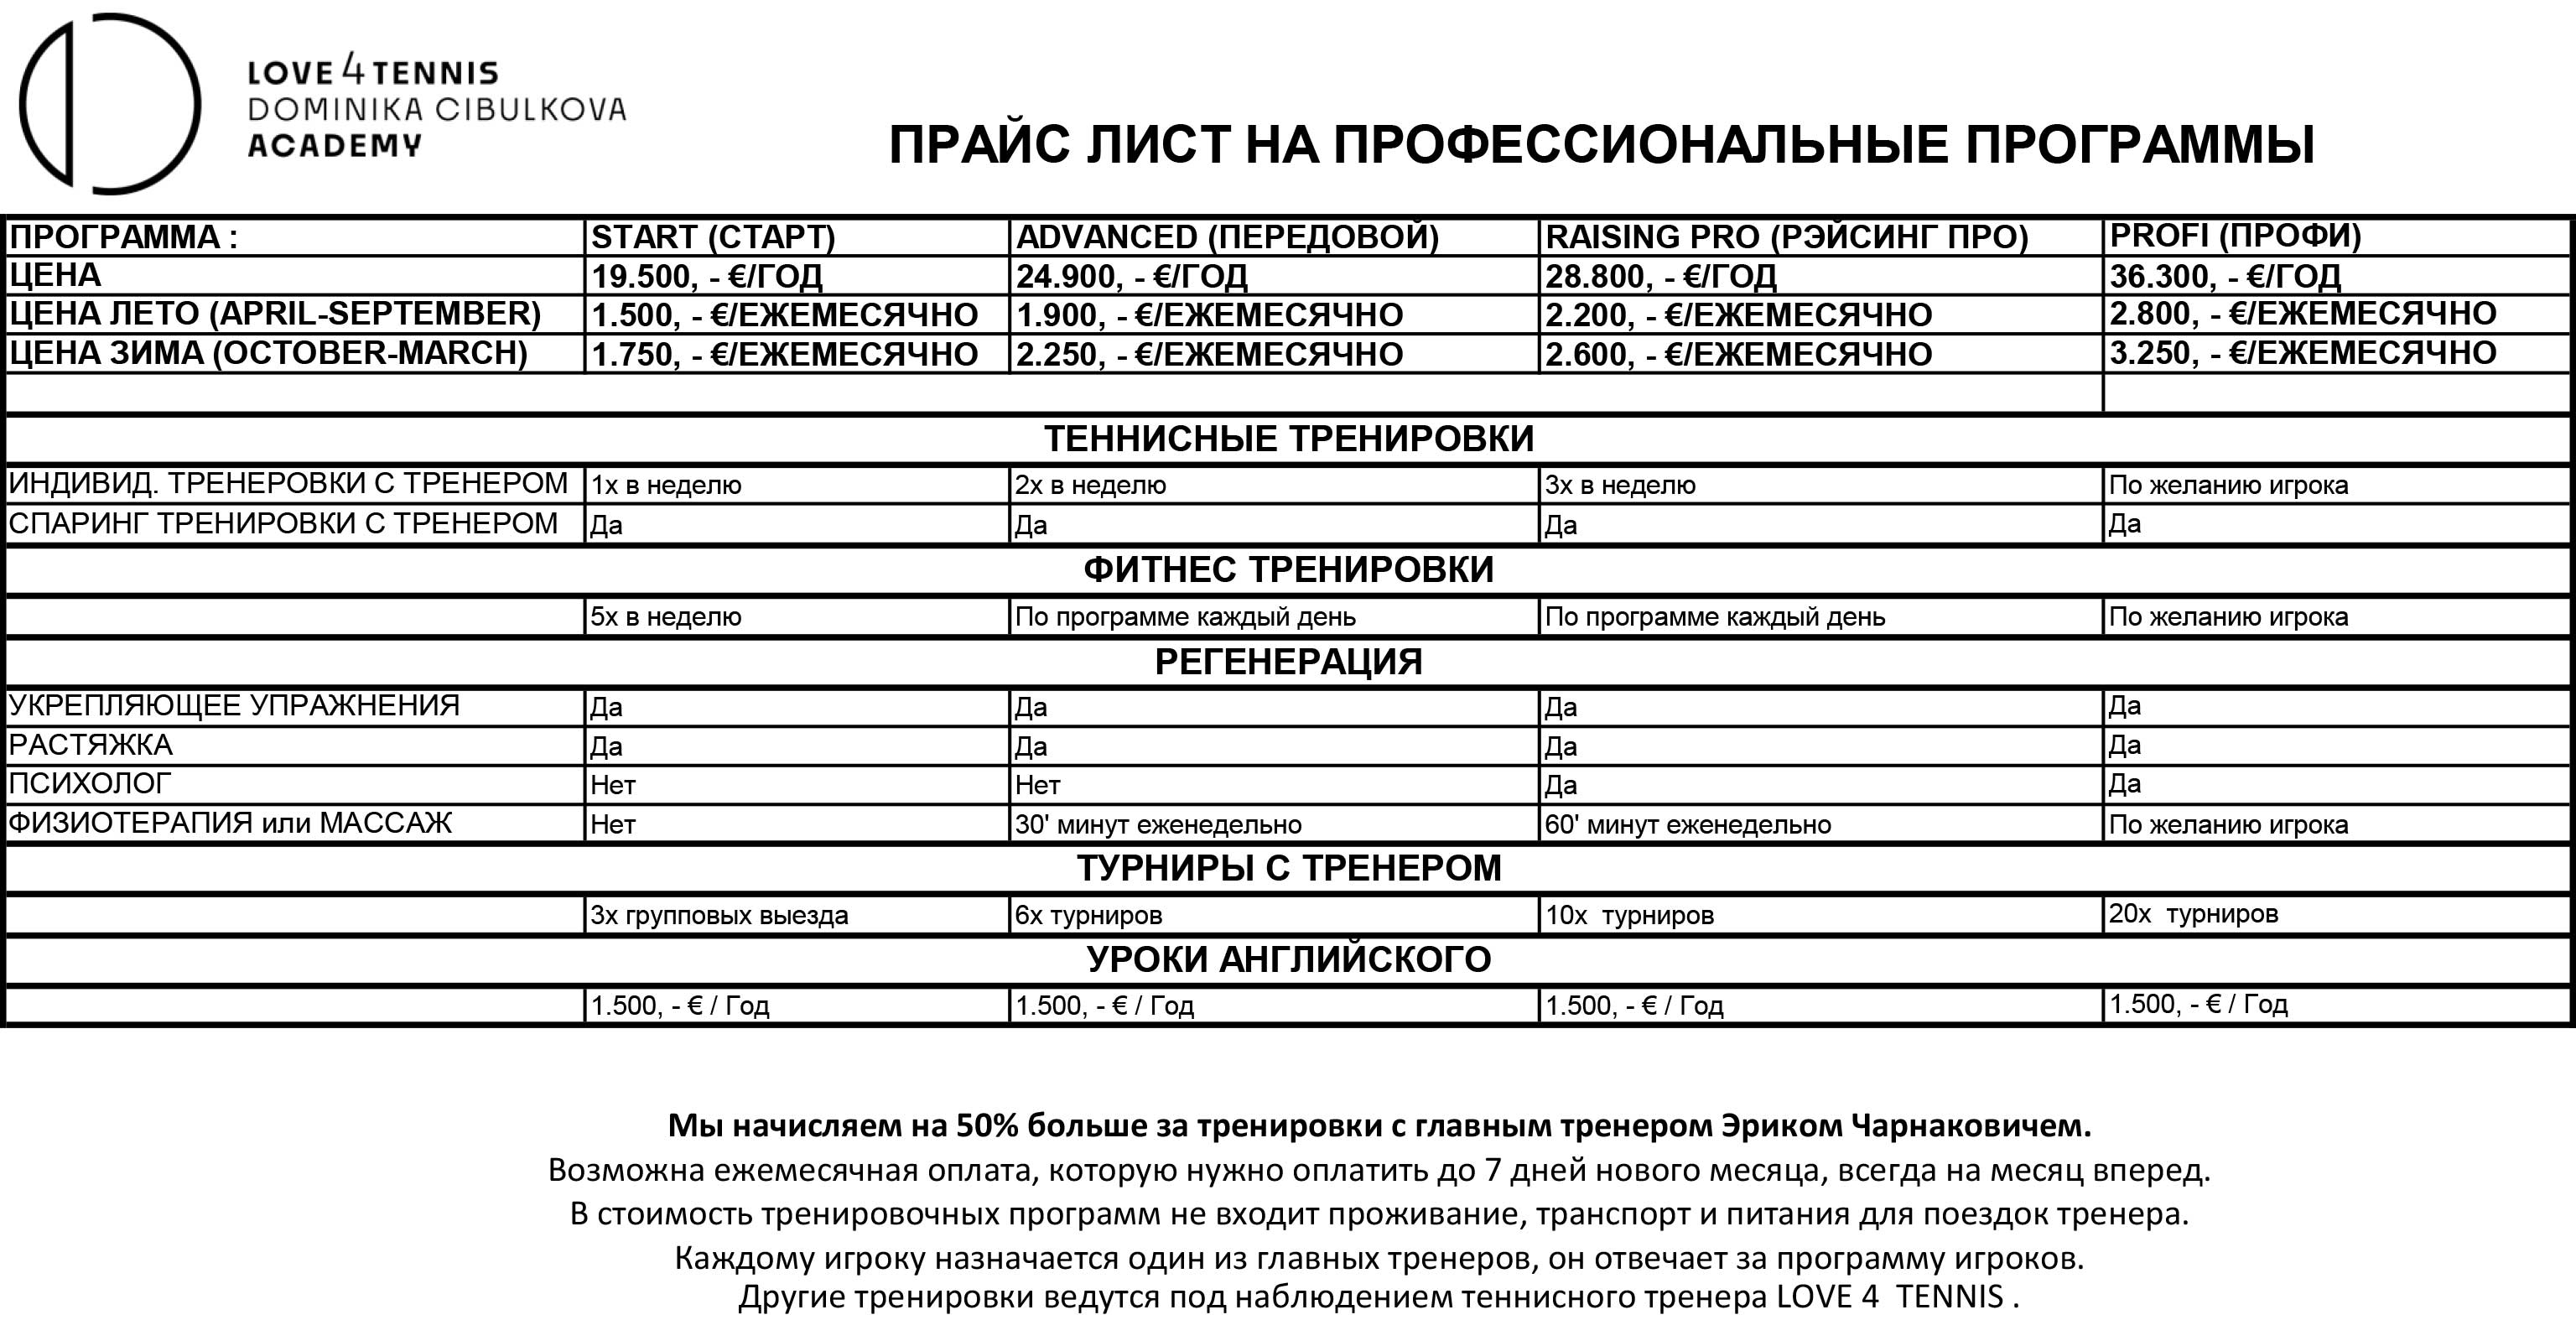 Price list annual program - RUS